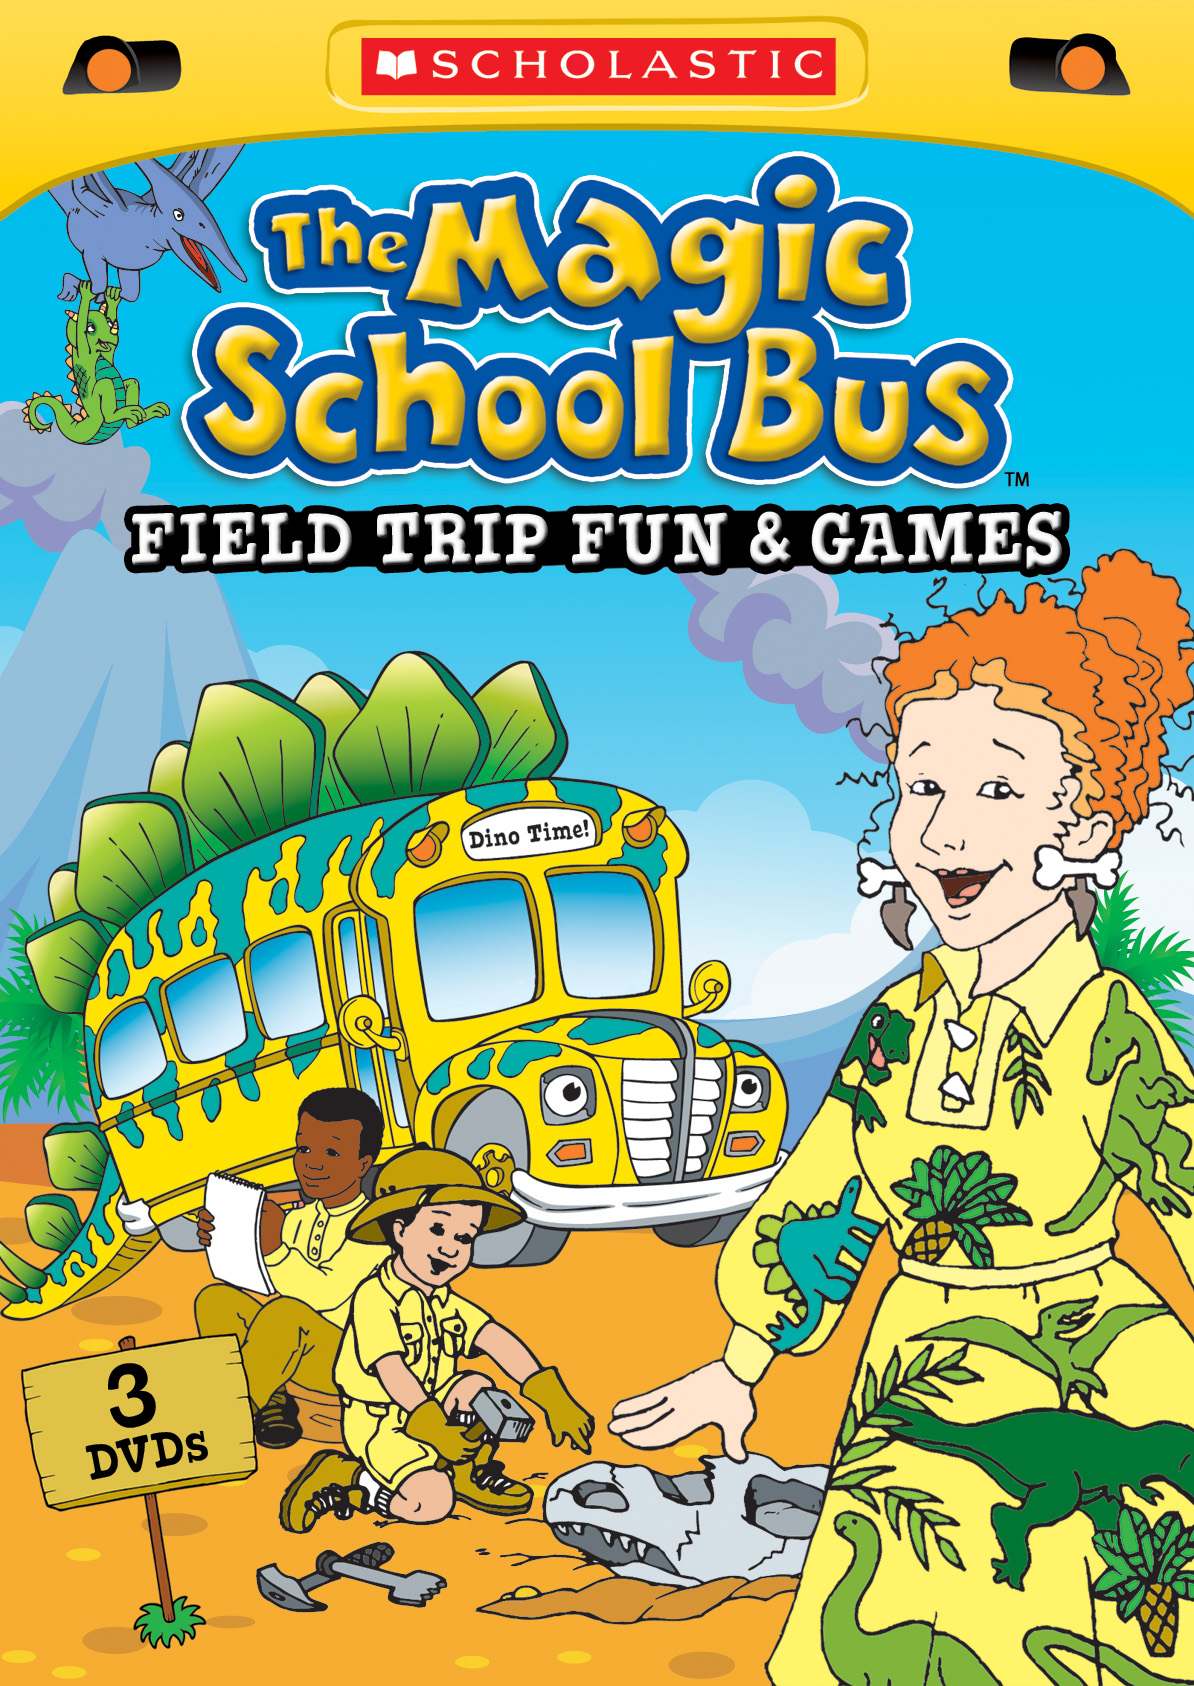 Magic school bus. Волшебный школьный автобус. Волшебный школьный автобус книга. The Magic School Bus.